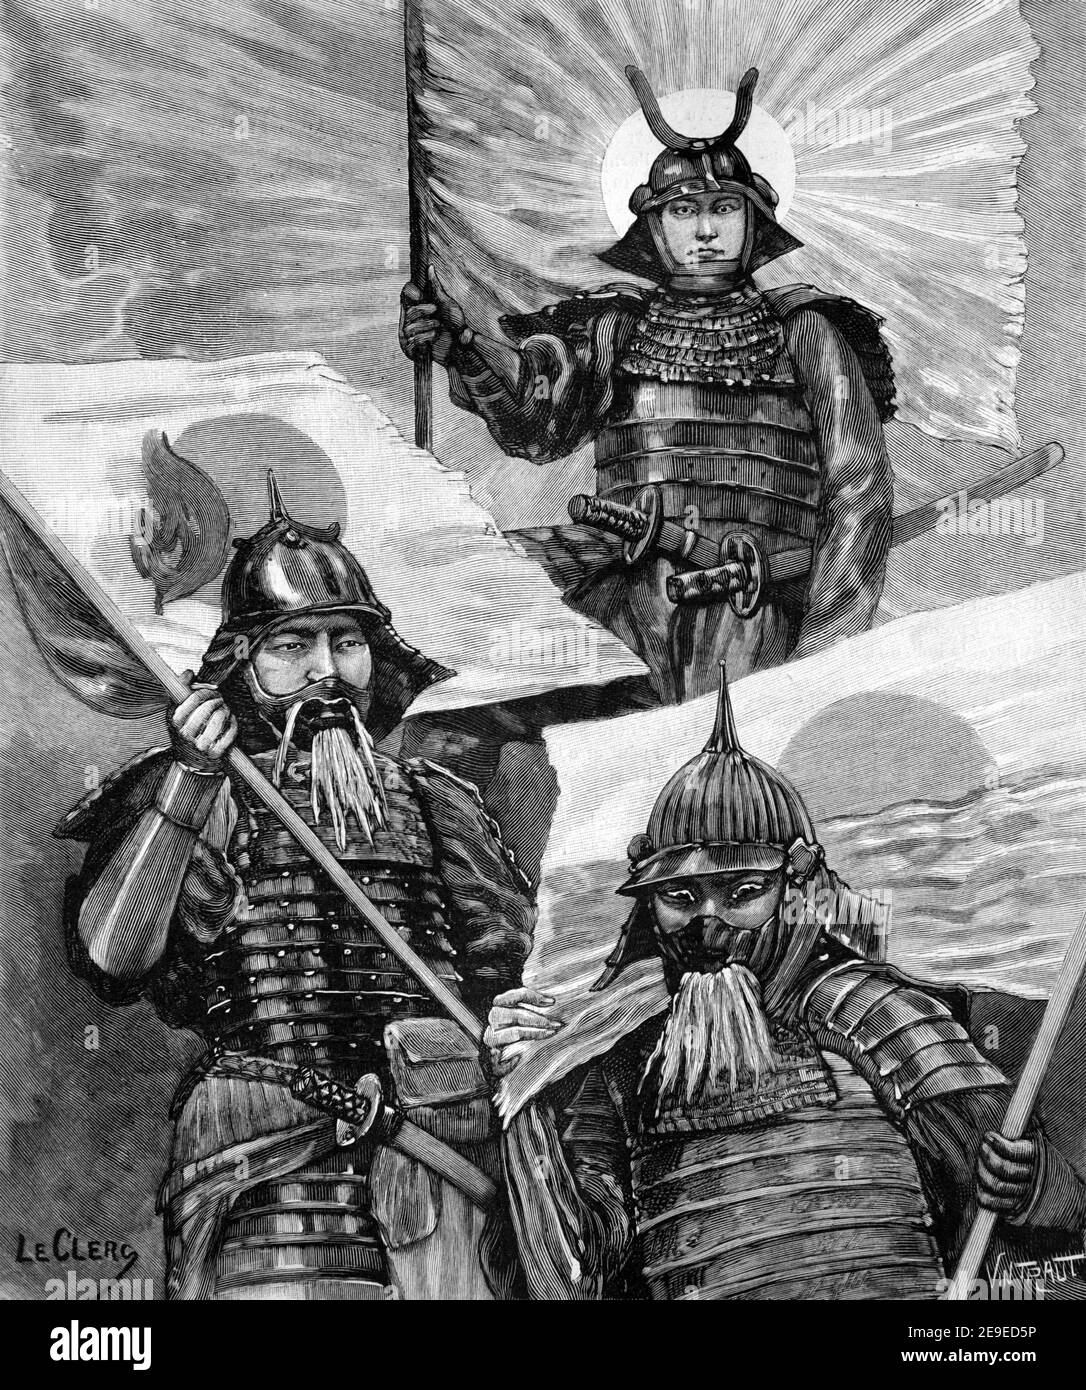 Sun Nations Chine Corée et Japon armées ou soldats vêtus En armure ou uniformes militaires Asie 1898 Vintage Illustration ou Gravure Banque D'Images